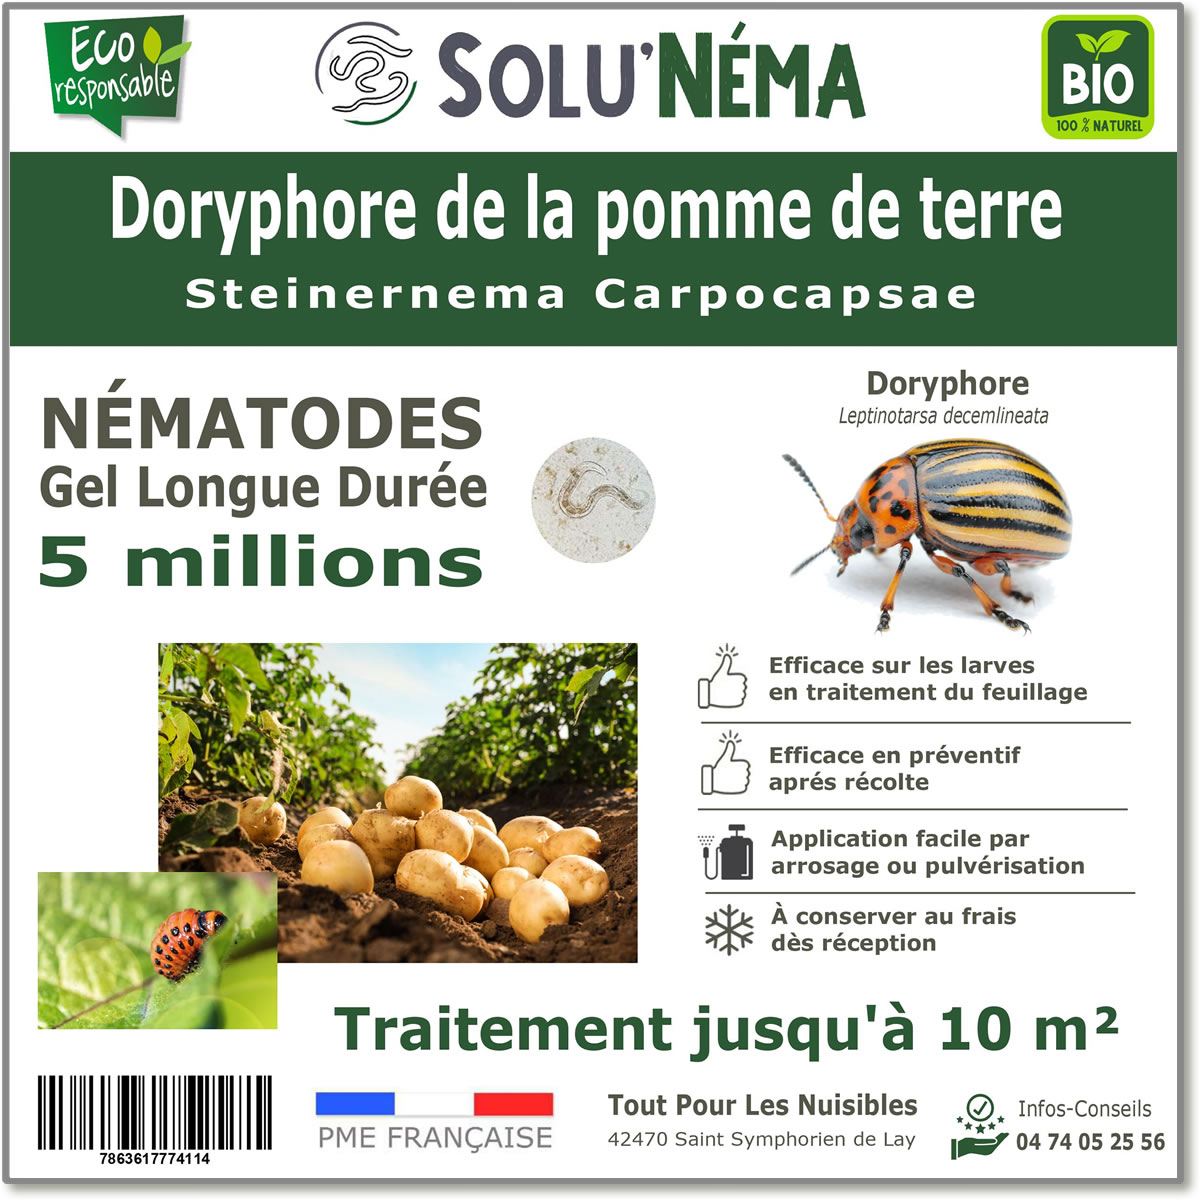 5 millions de nématodes pour traiter les larves de doryphore de la pomme de terre